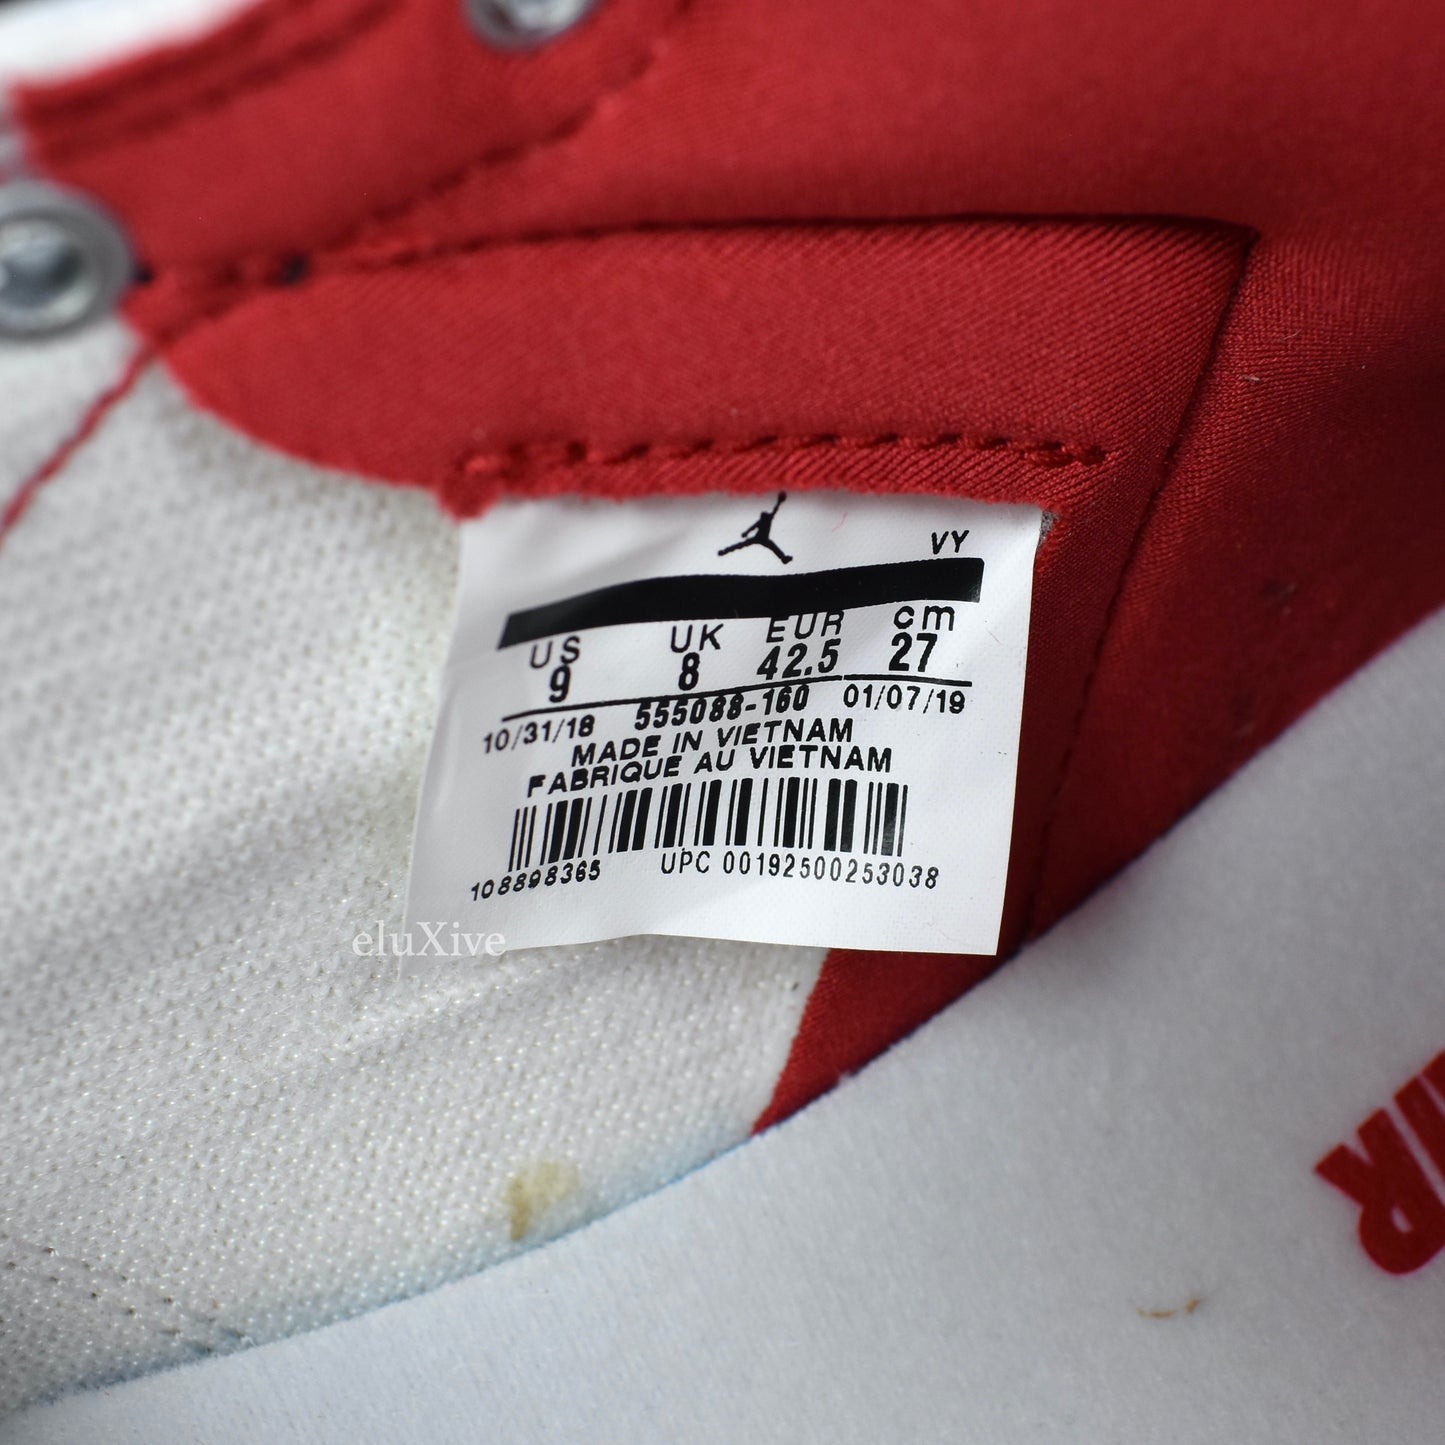 Nike - Air Jordan 1 Retro High OG 'Phantom' (Red/White)